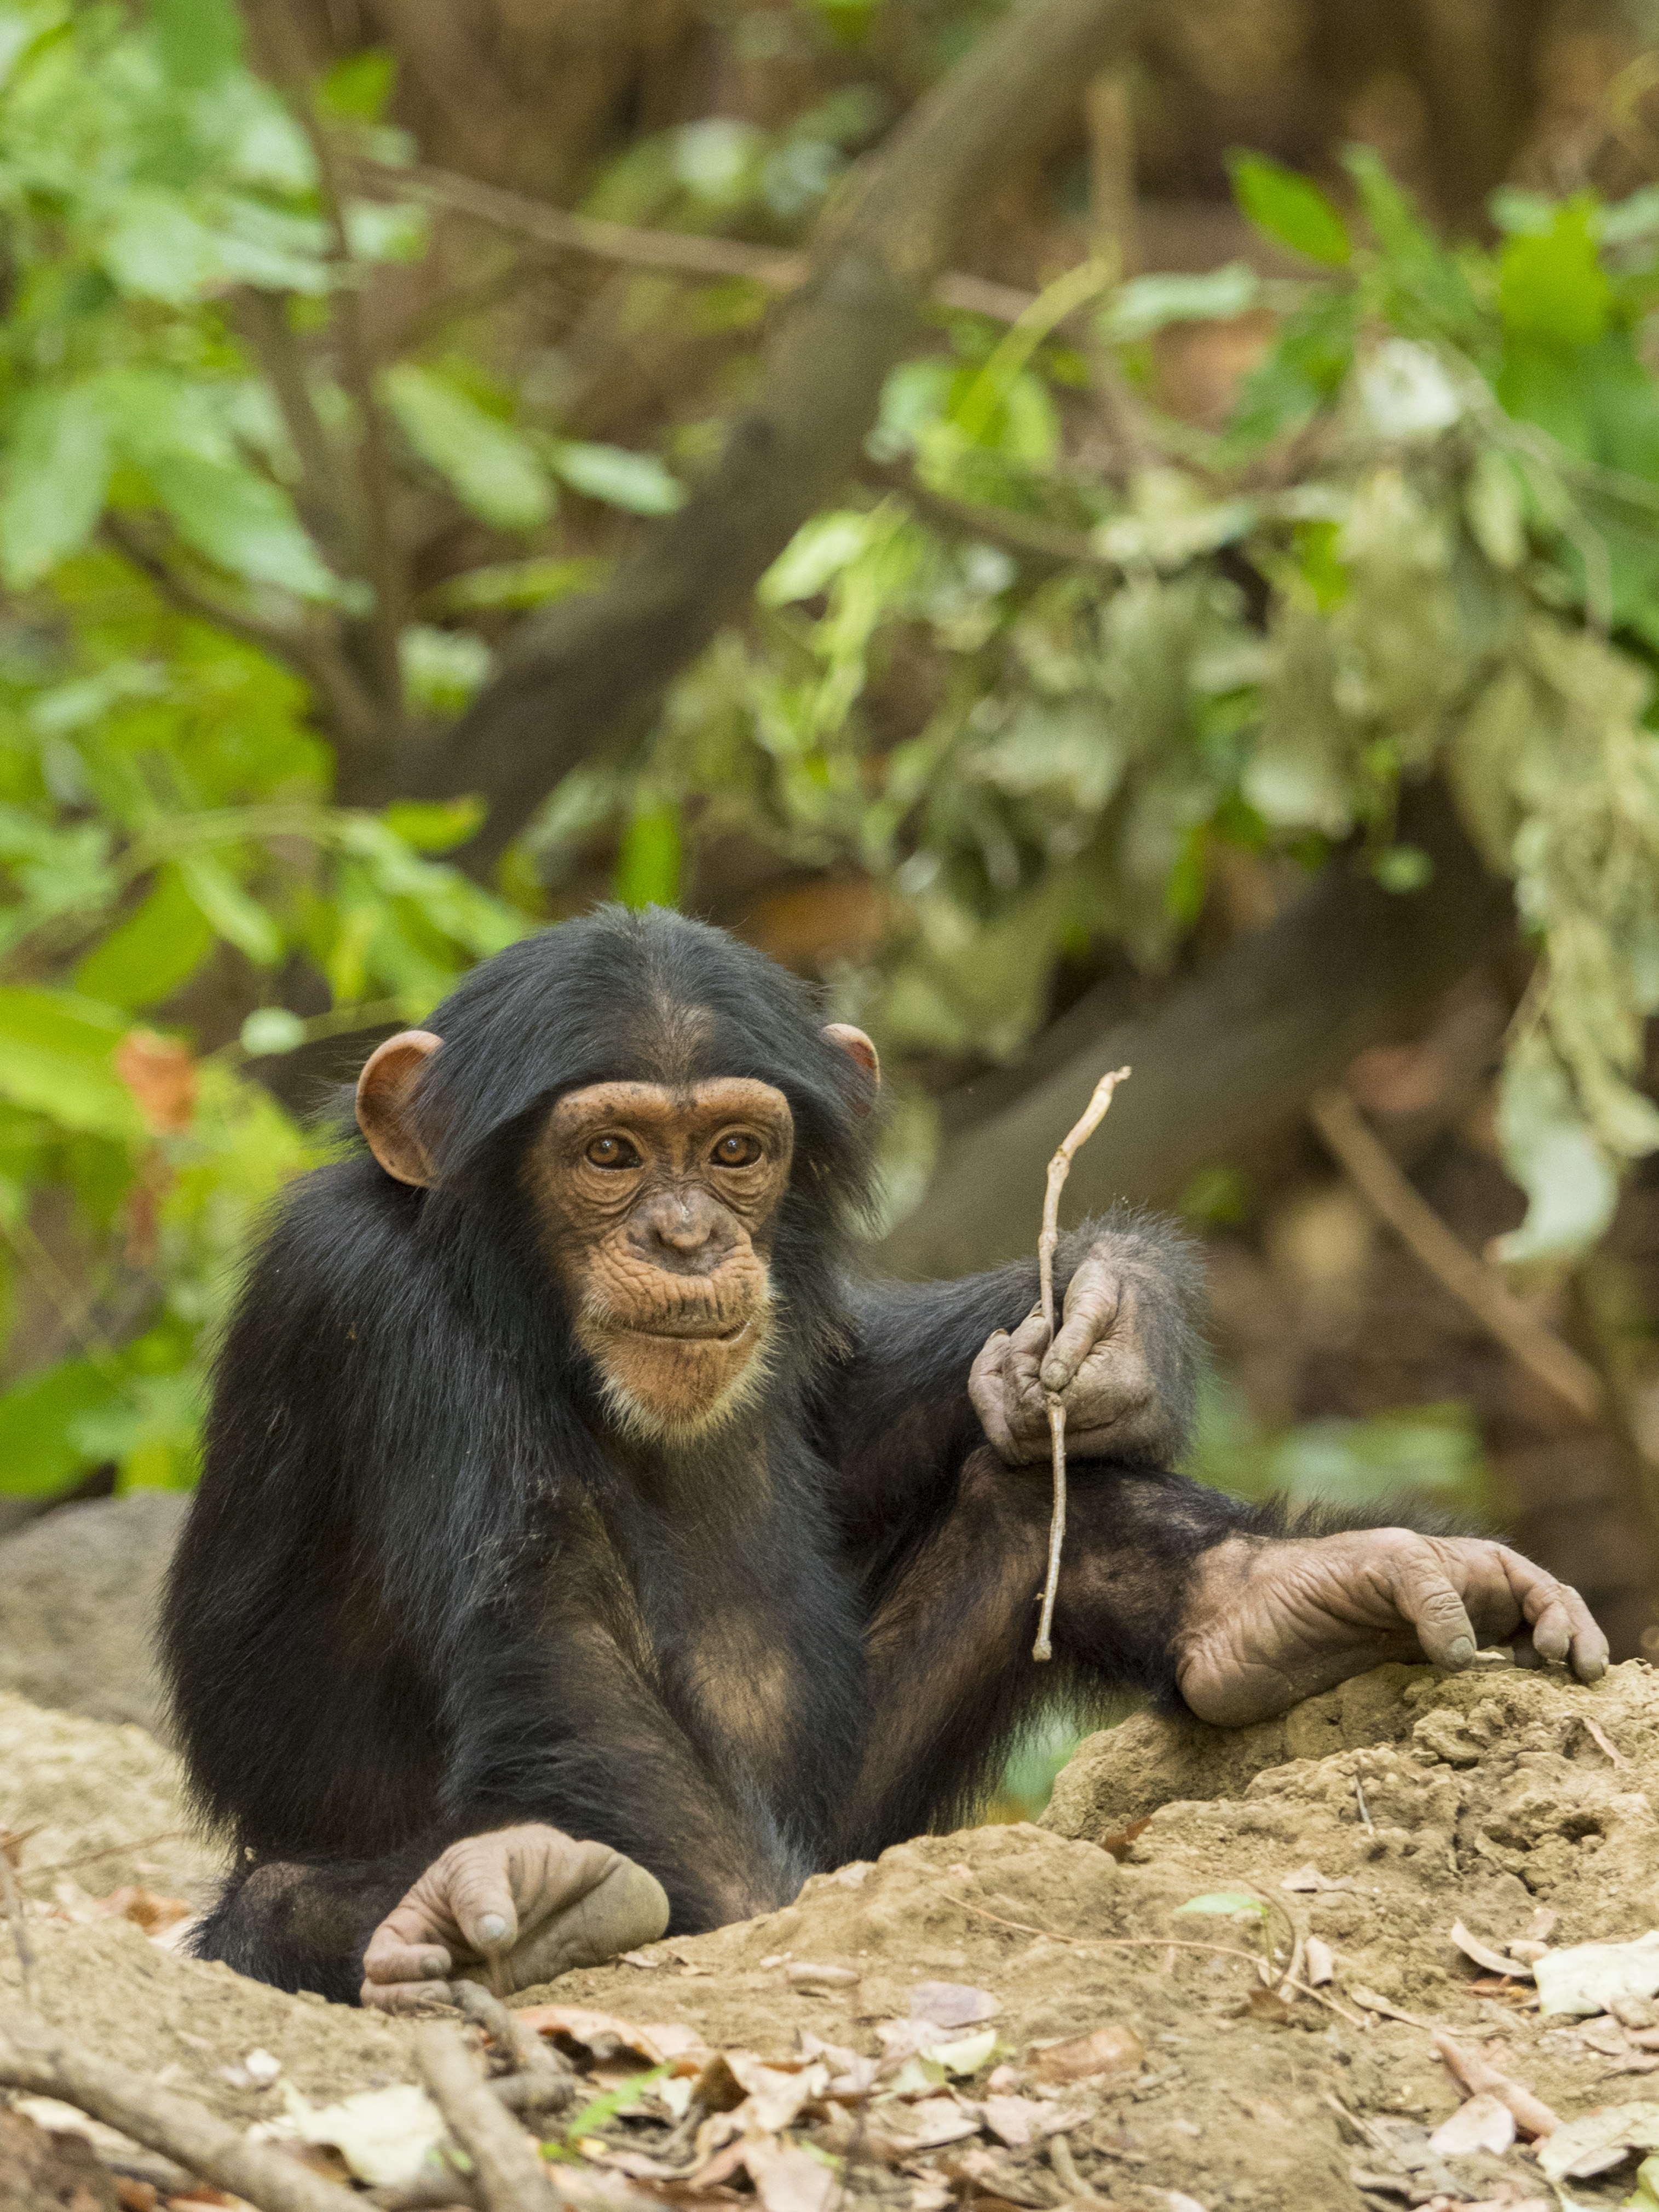 A baby chimp termite fishing in Senegal